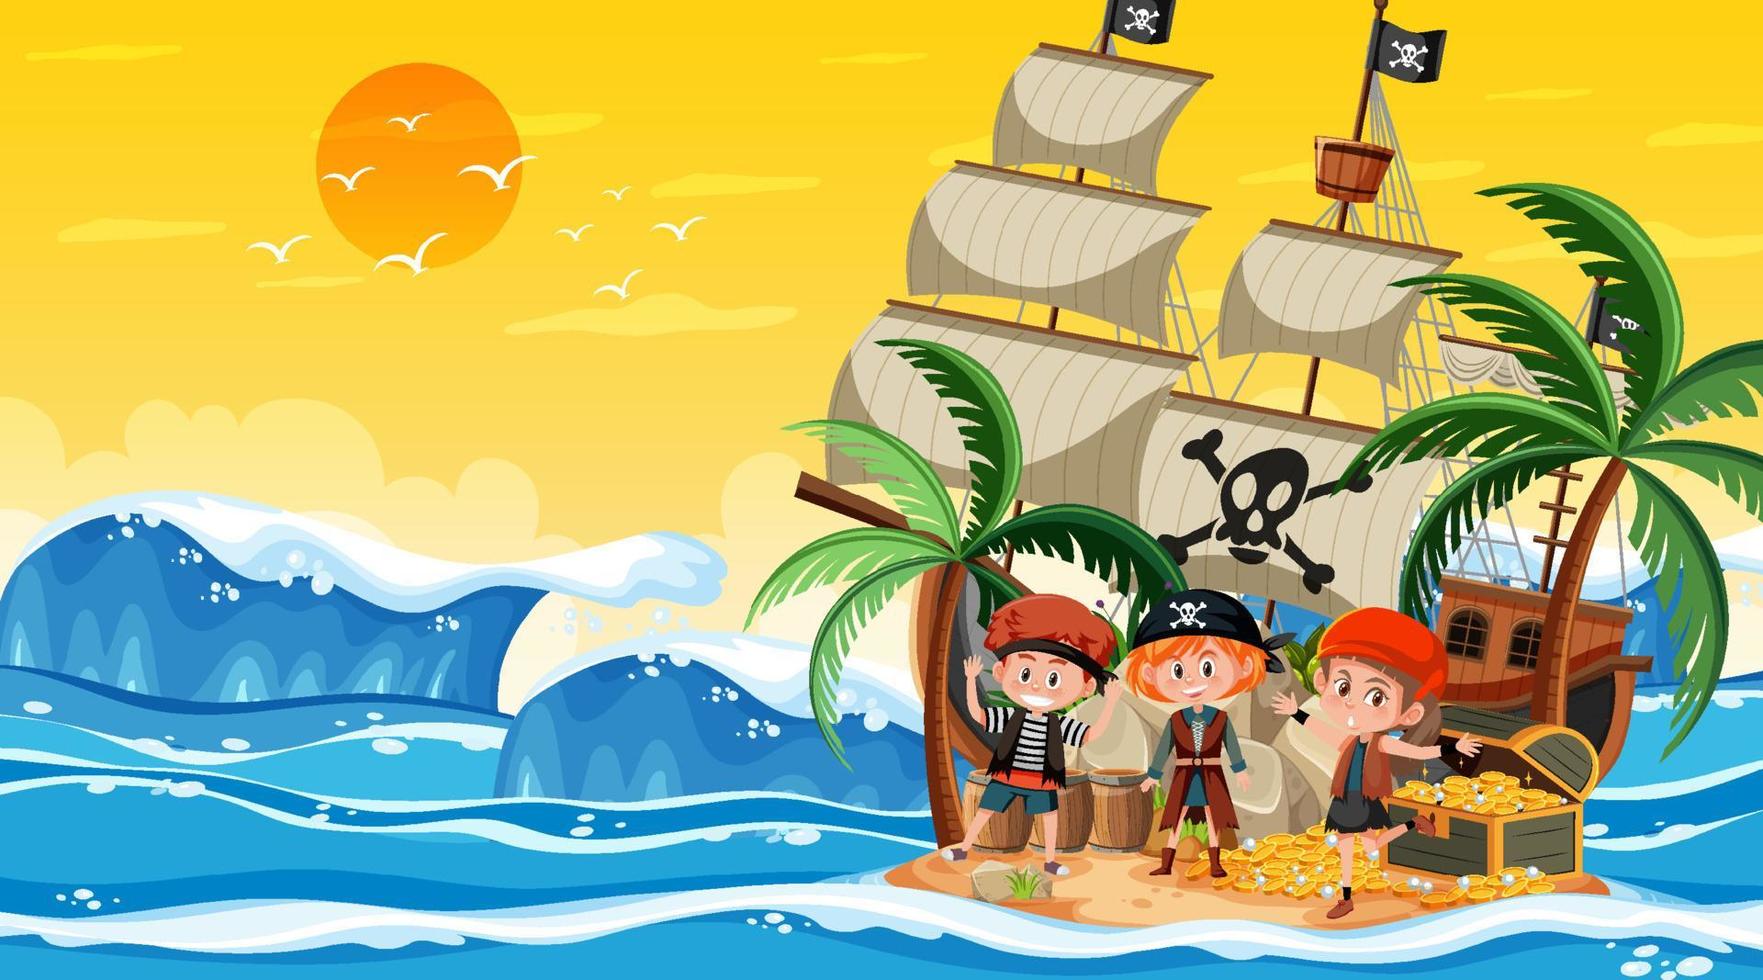 cena da ilha do tesouro na hora do pôr do sol com crianças piratas vetor